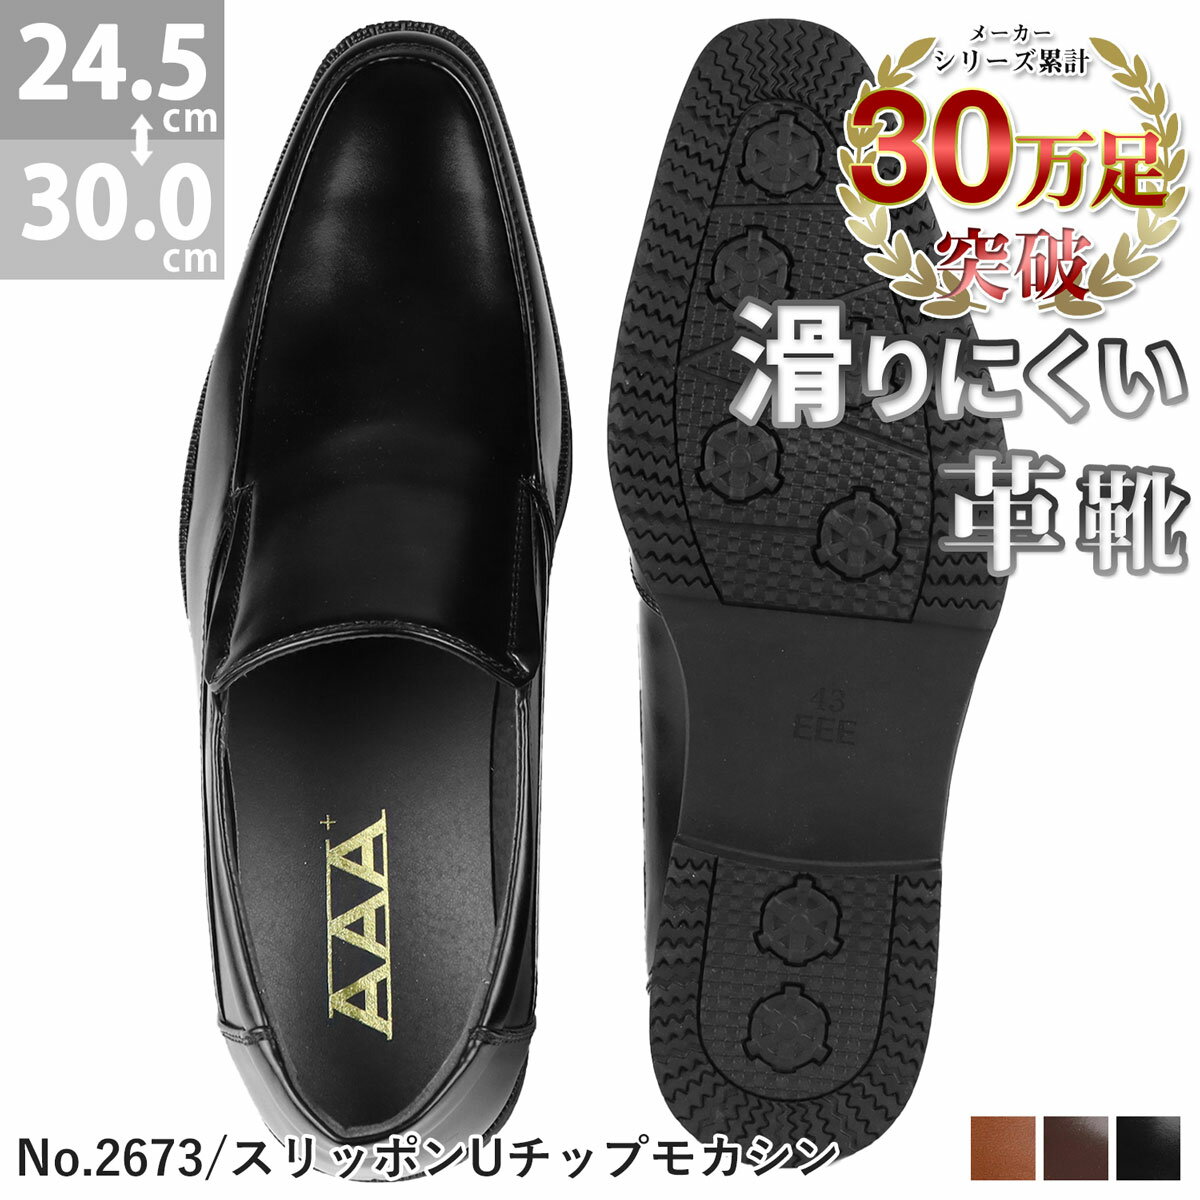 ビジネスシューズ 革靴 スリッポン Uモカシン 黒 茶 滑りにくい 防滑 雨 メンズ 靴 シューズ 幅広 3E 履きやすい レ…